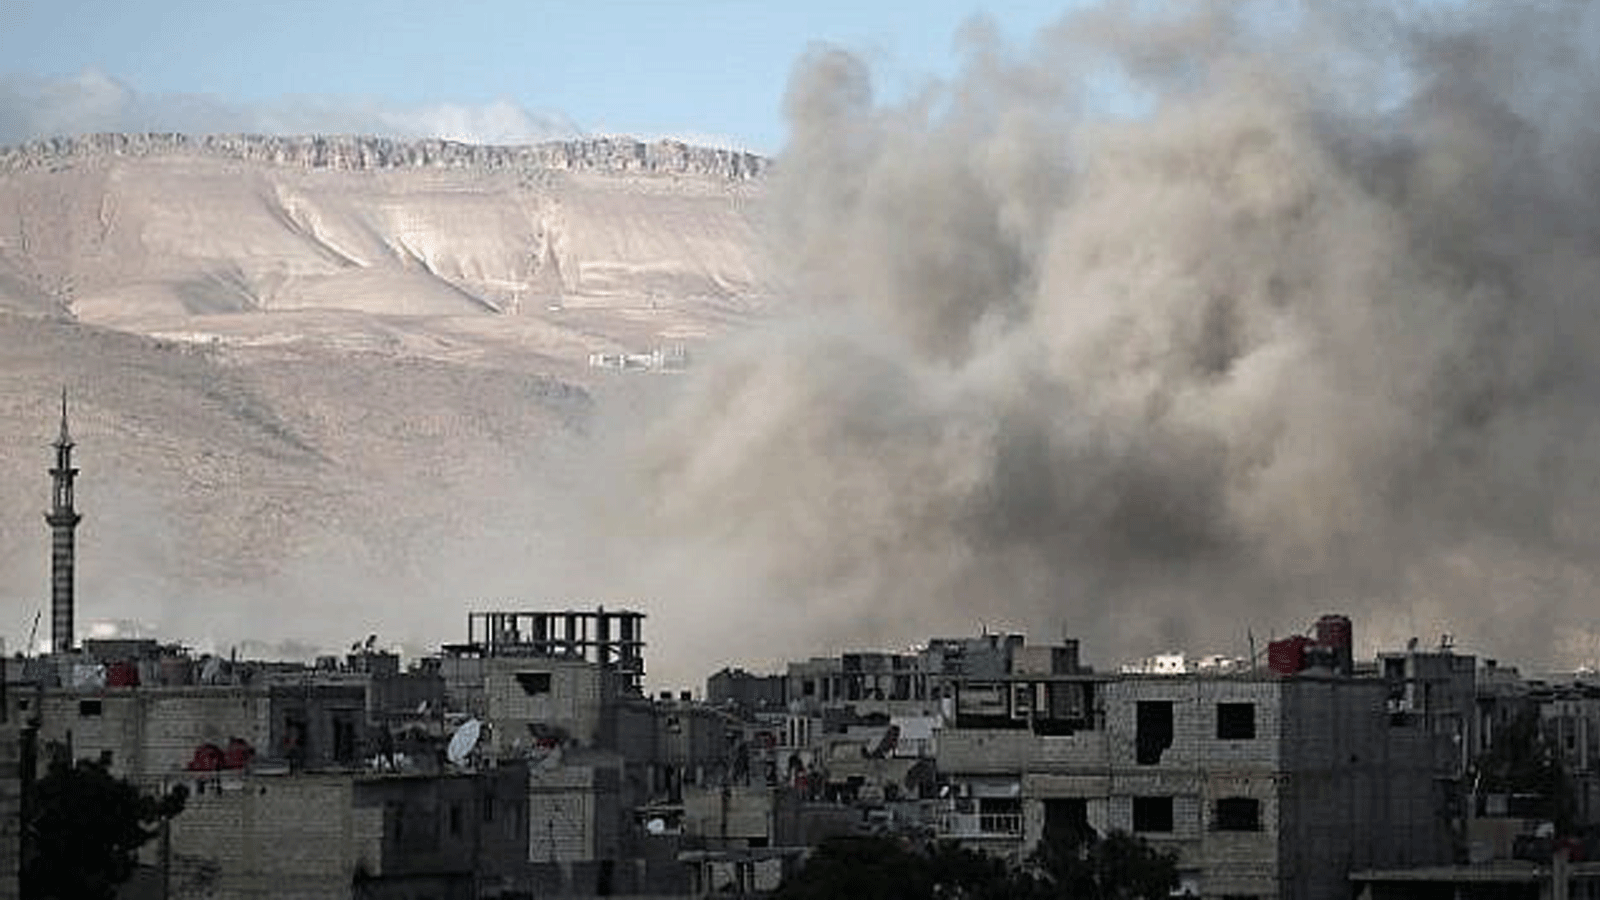 دخان يتصاعد من المباني إثر غارة جوية في عربين بمنطقة الغوطة الشرقية بضواحي العاصمة السورية دمشق في 2 كانون الثاني/ يناير 2018.